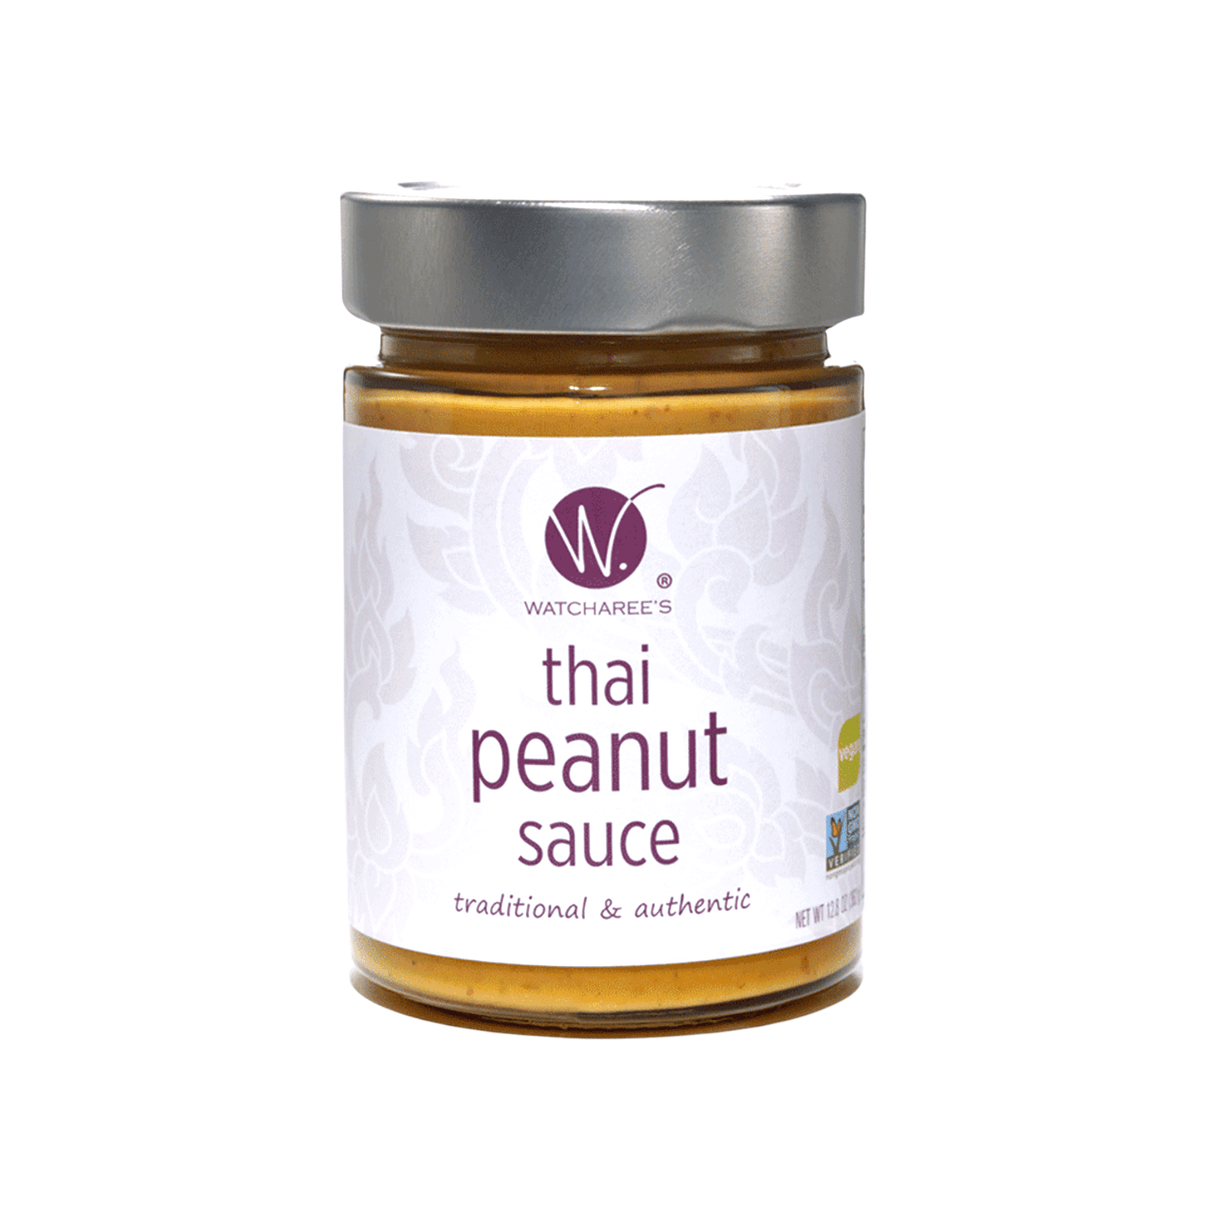 Watcharee's Thai Peanut Sauce